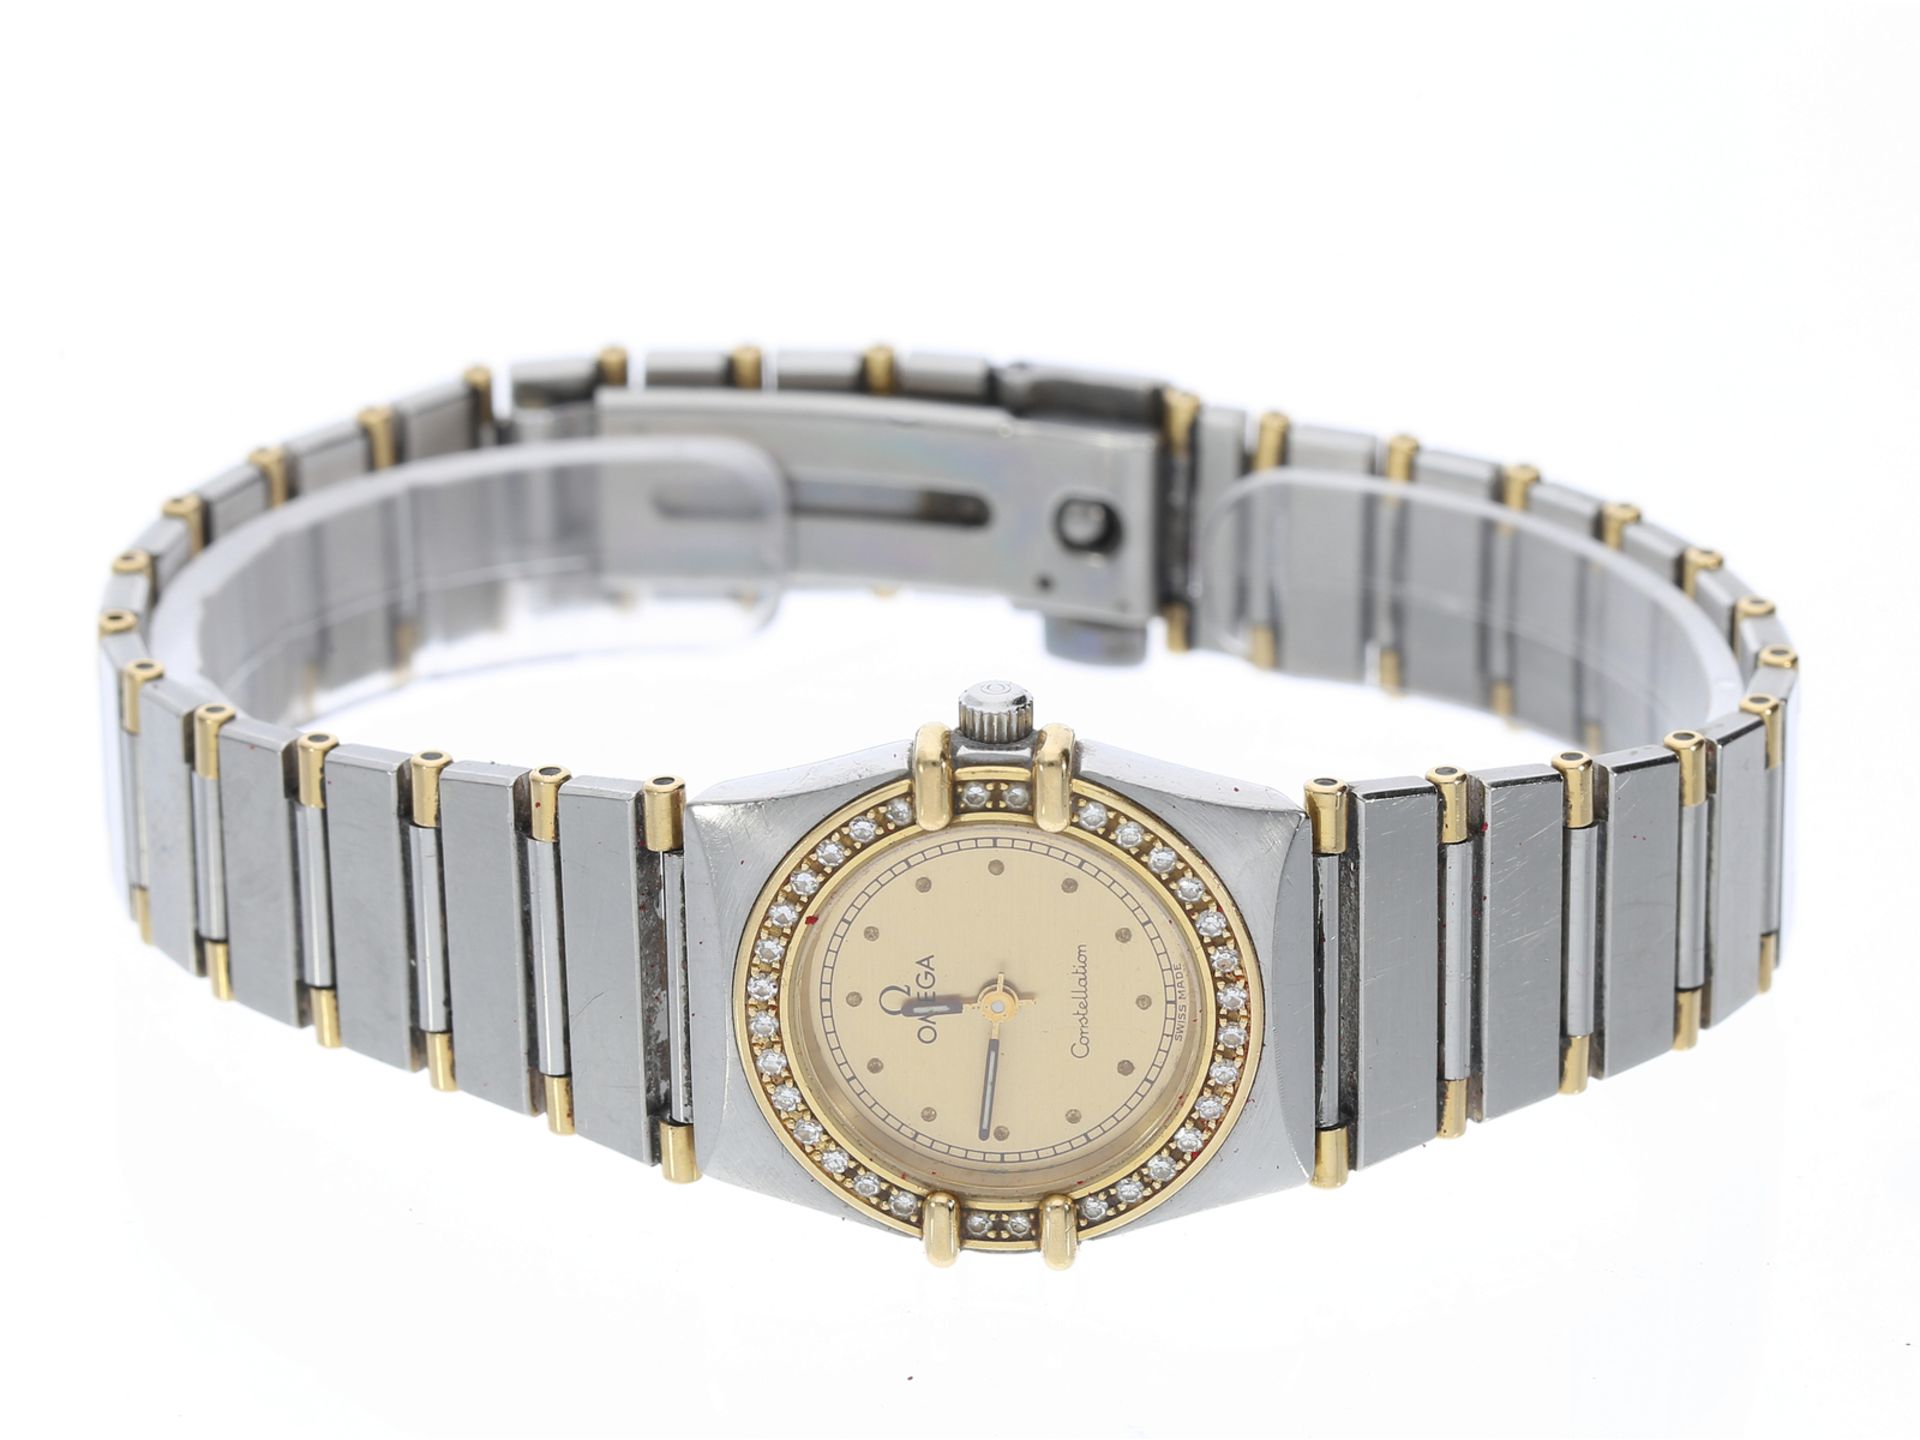 Armbanduhr: Omega Constellation Damenuhr mit Diamantbesatz, Stahl/Gold von 1997 mit Papieren - Image 2 of 2